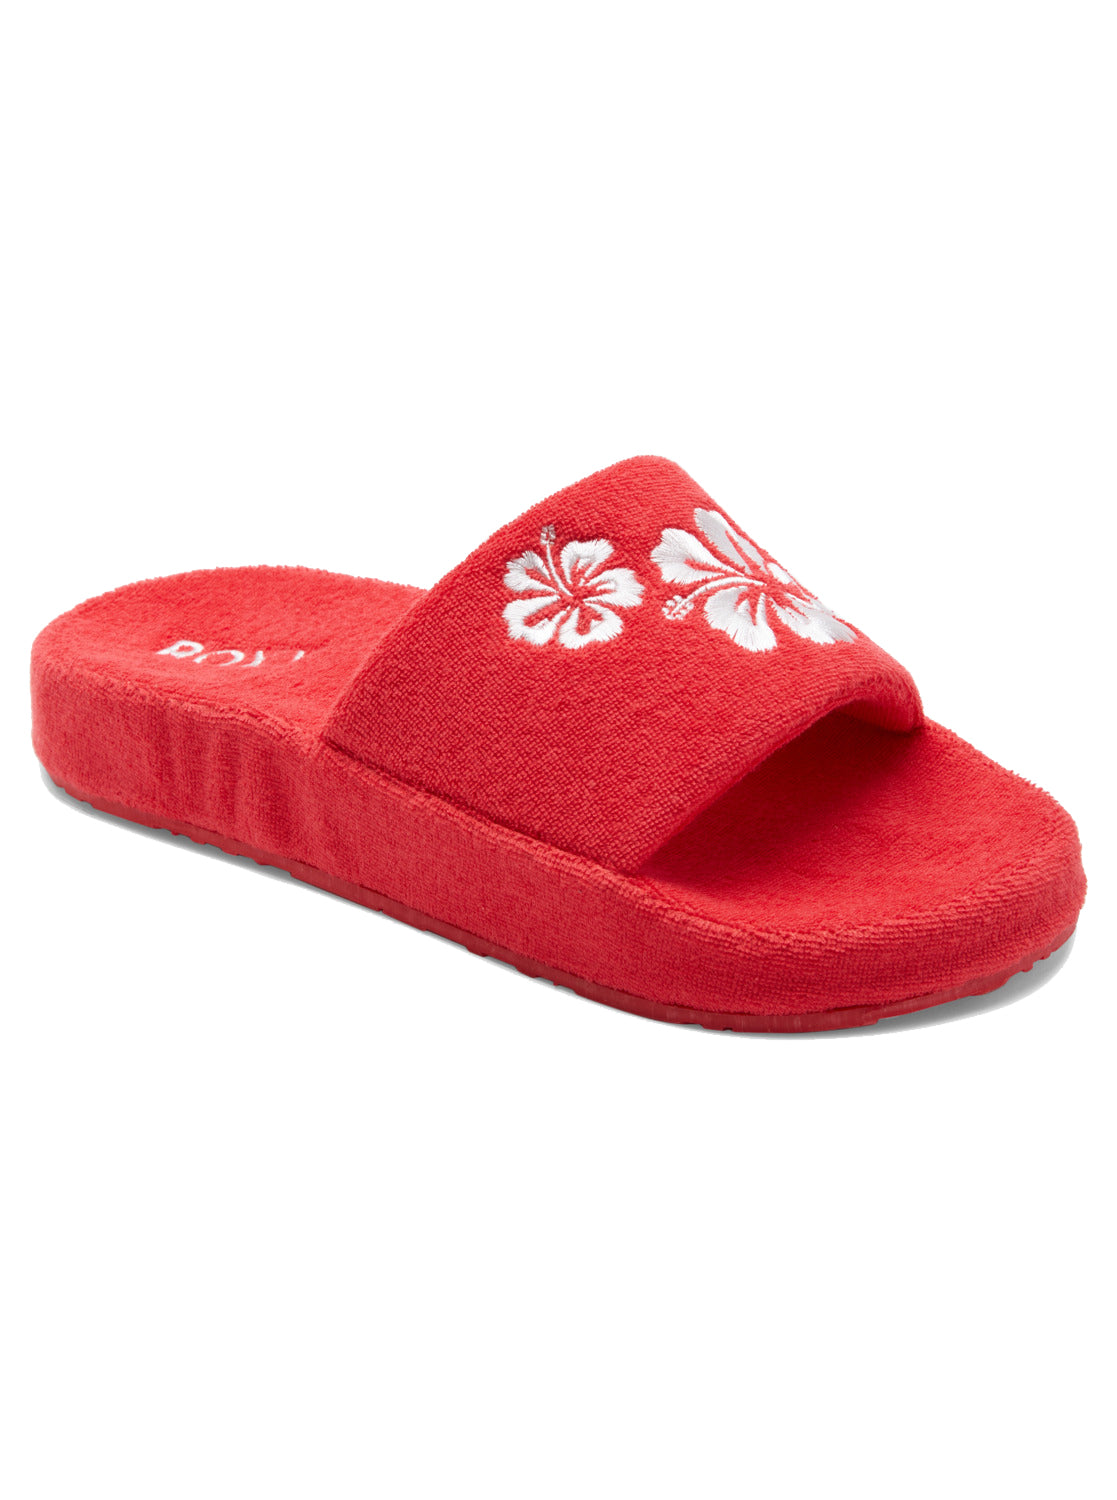 Roxy Slippy Sandals RED 7